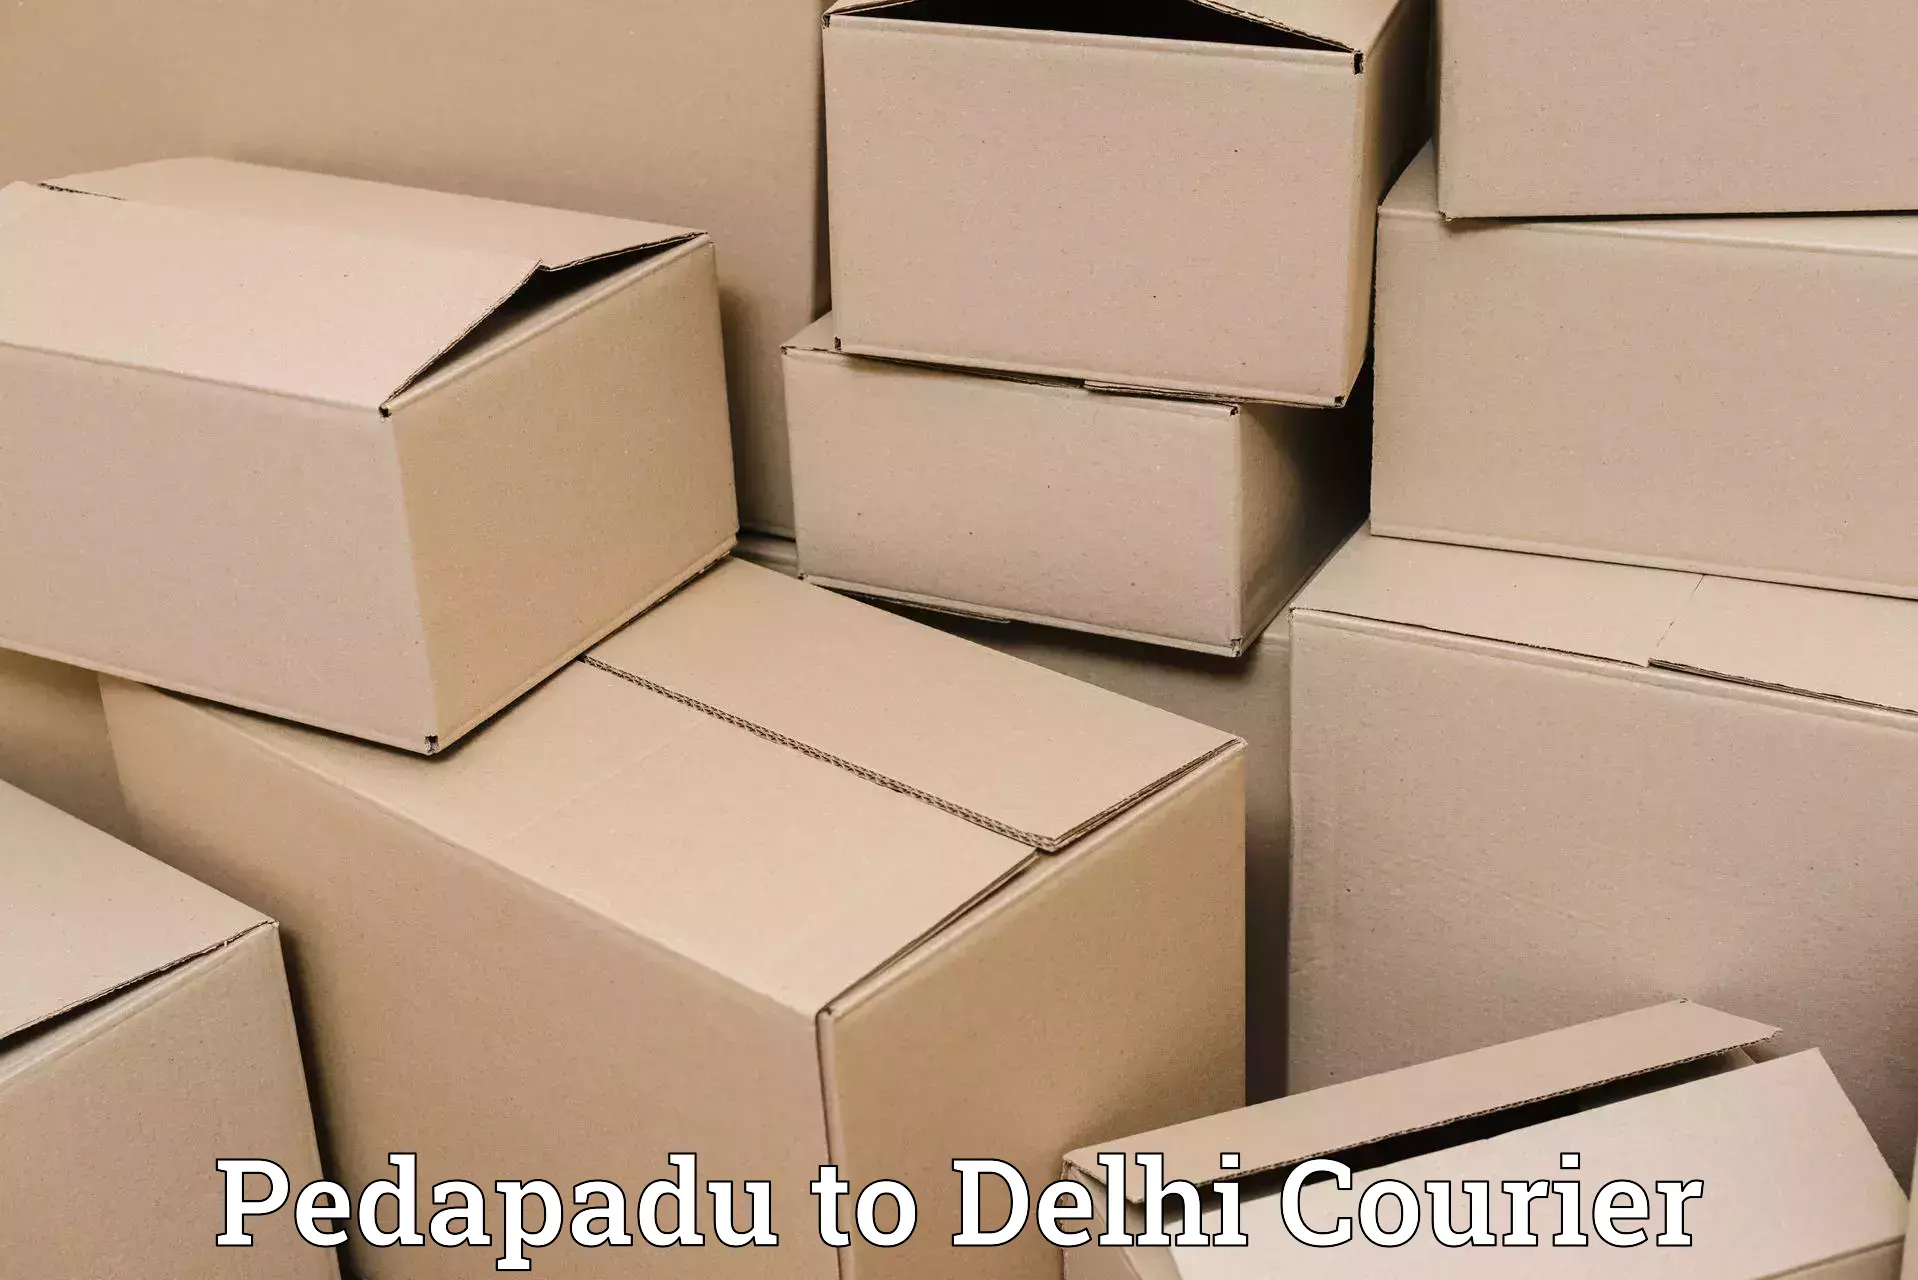 24/7 courier service Pedapadu to Delhi